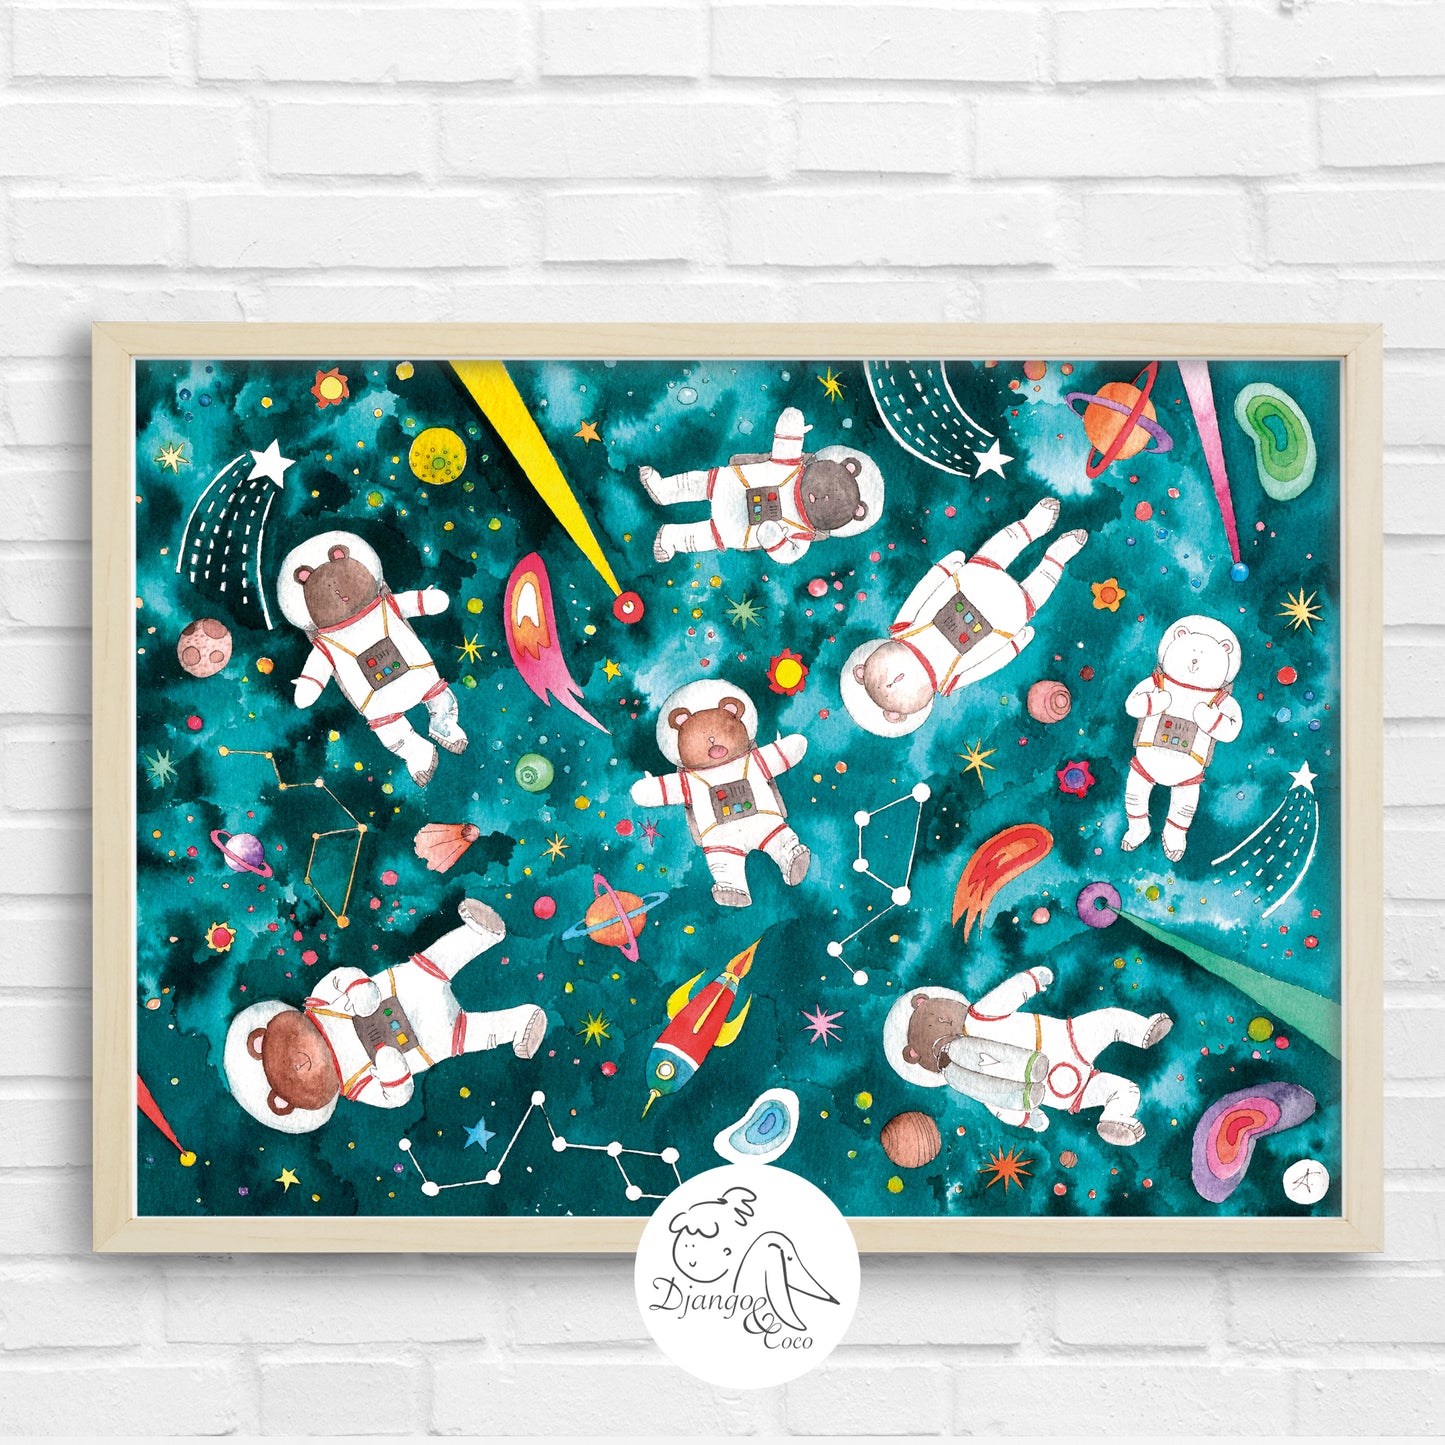  Little bears in space